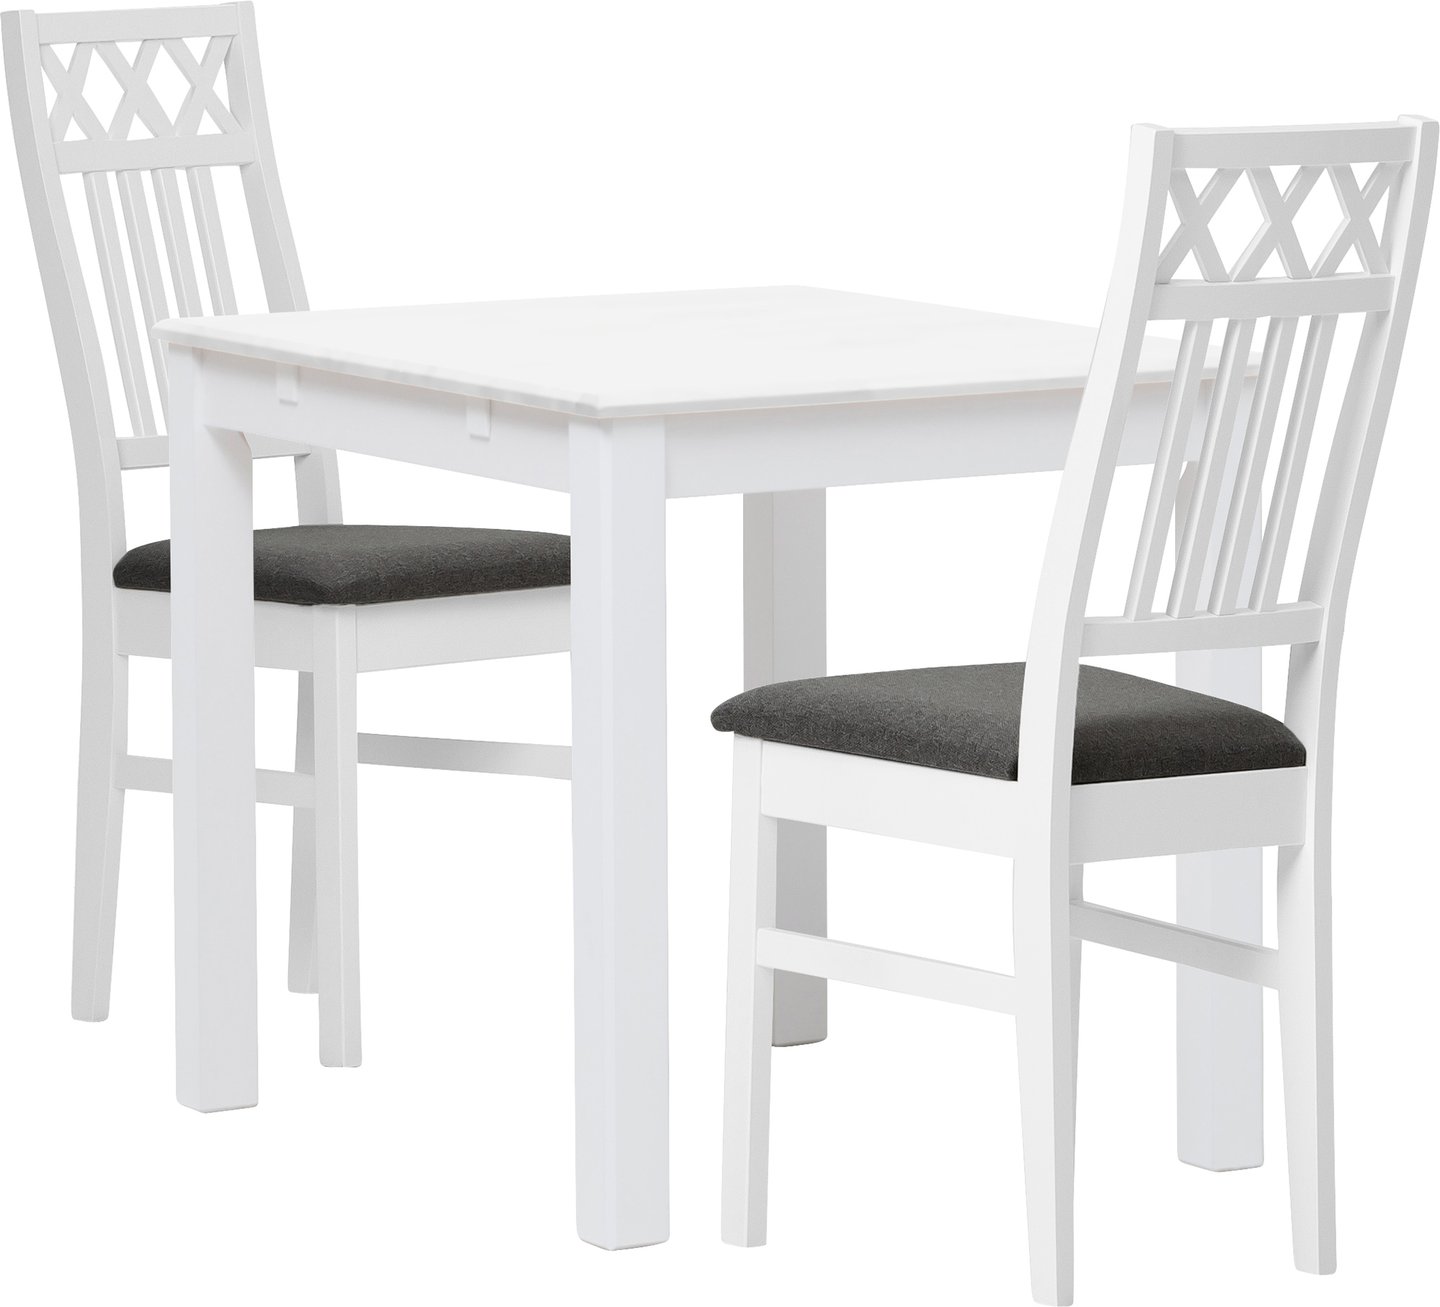 Hovi ruokailuryhmä 70x85. Valkoinen pöytä. Valkoinen tuoli, vaaleanharmaa verhoilu